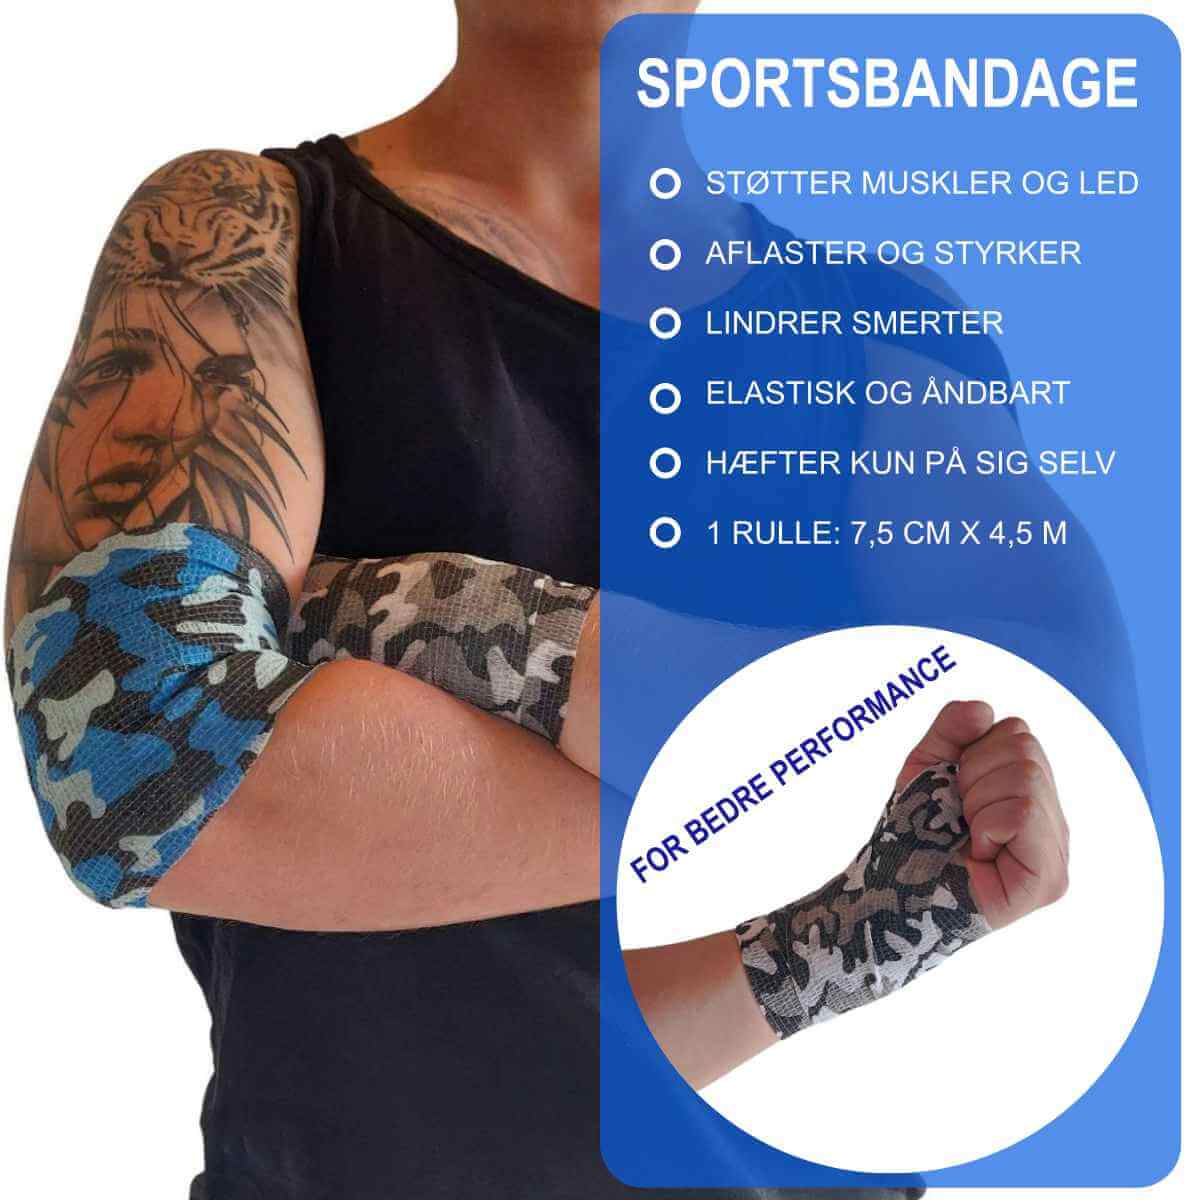 Wrap bandage. Køb elastisk sportsbandage med støtte og aflastning til muskler og led, der forebygger skader og reducerer smerter og hævelse i ankel, albue, håndled og knæ her.